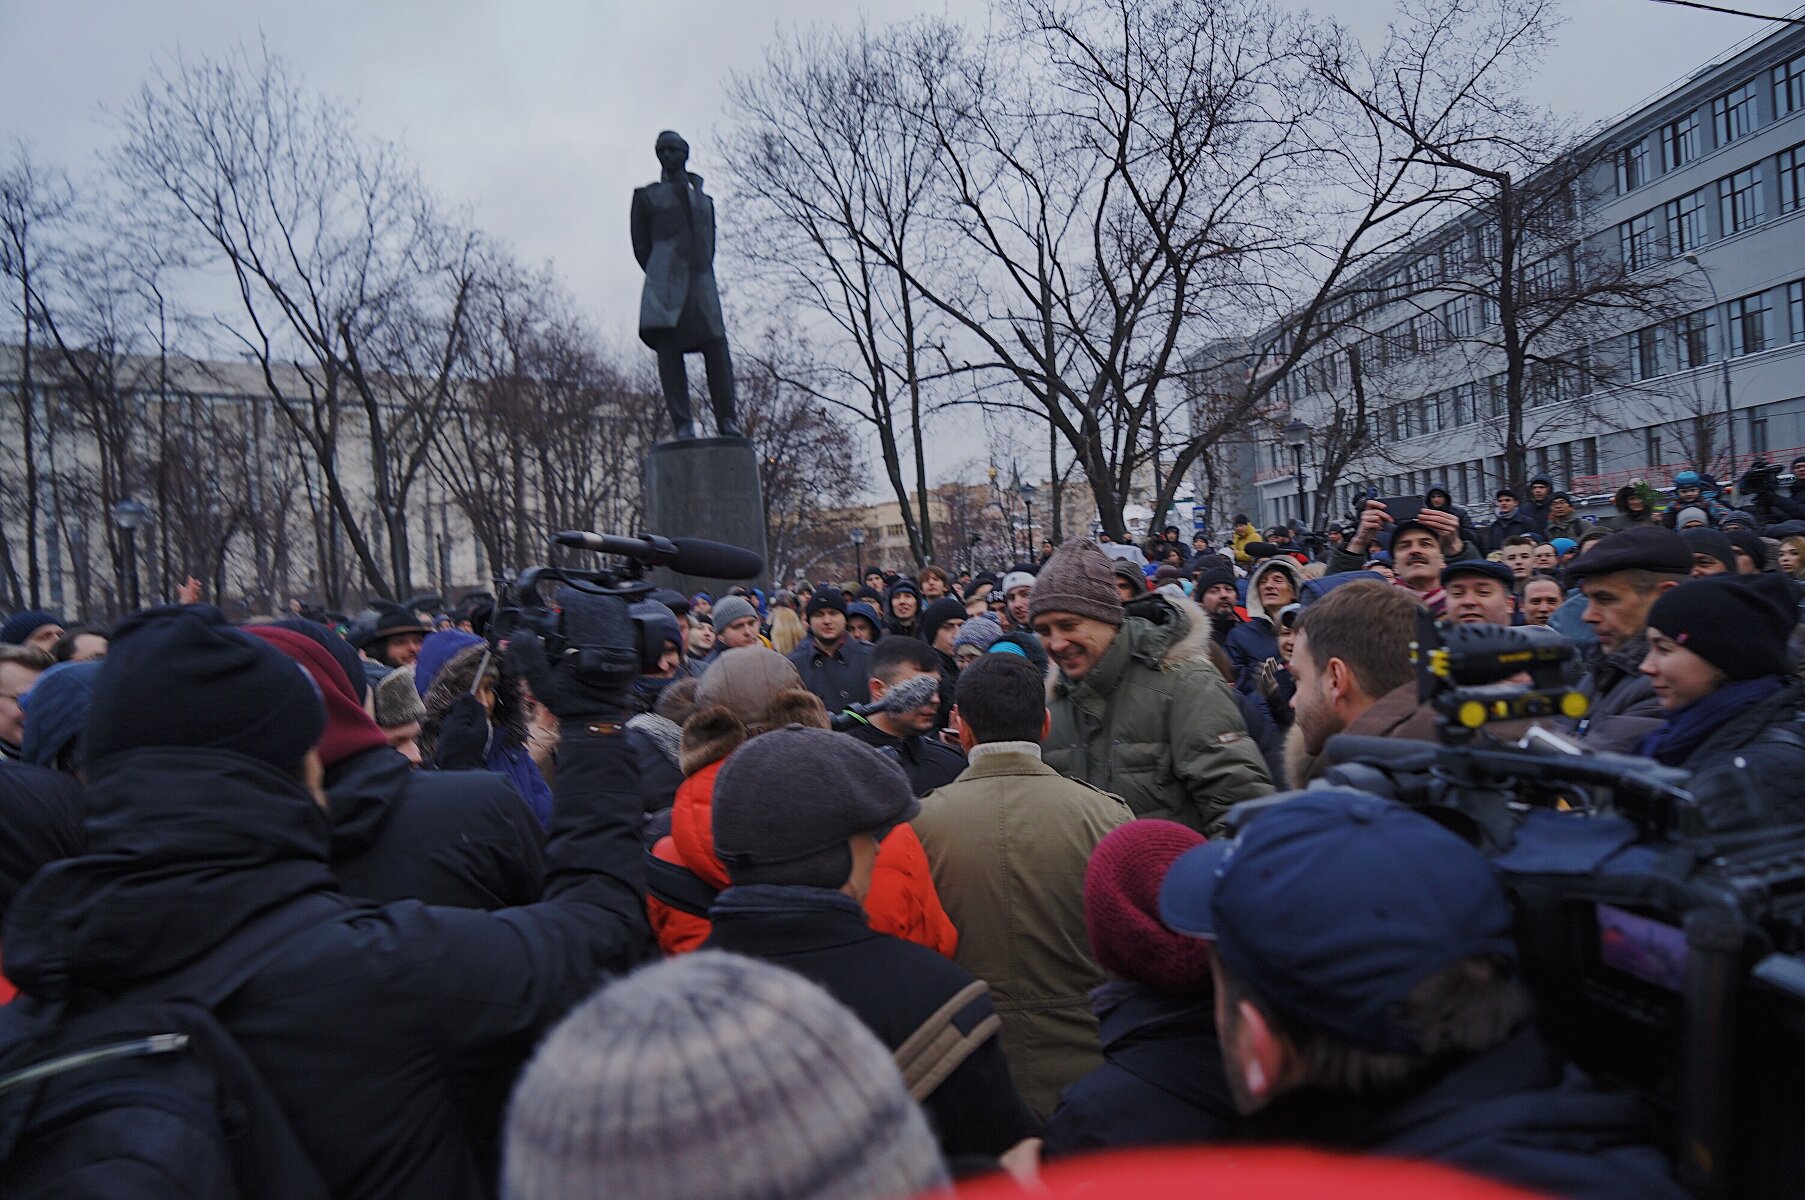 <p>По оценке управления МВД по Москве, мероприятие в Лермонтовском сквере посетили 300 человек, из&nbsp;которых &laquo;примерно половина&raquo;&nbsp;&mdash; представители СМИ и&nbsp;блогеры.</p>